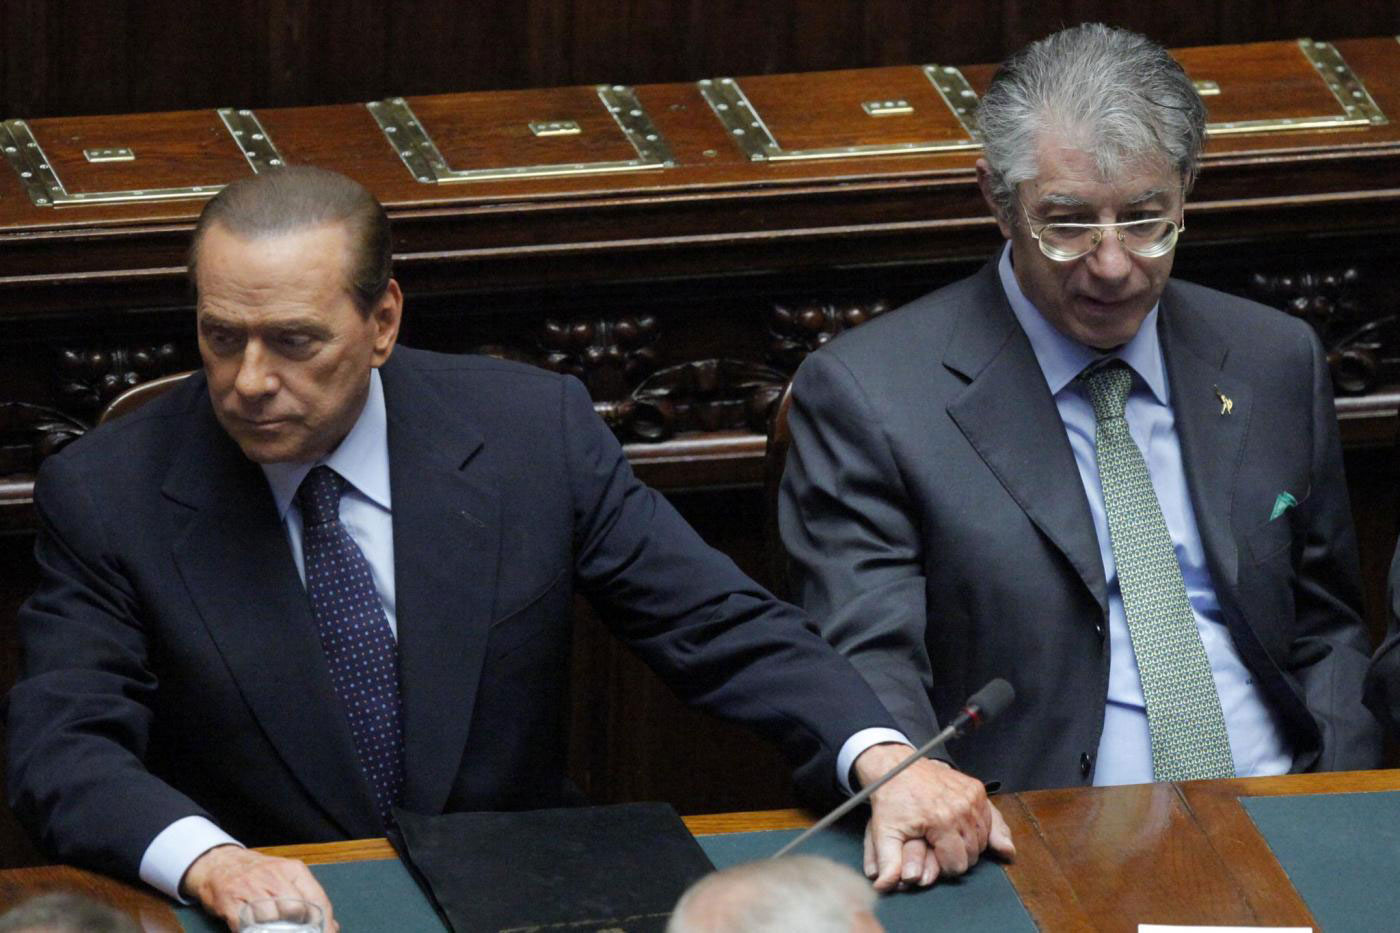 Berlusconi e Bossi